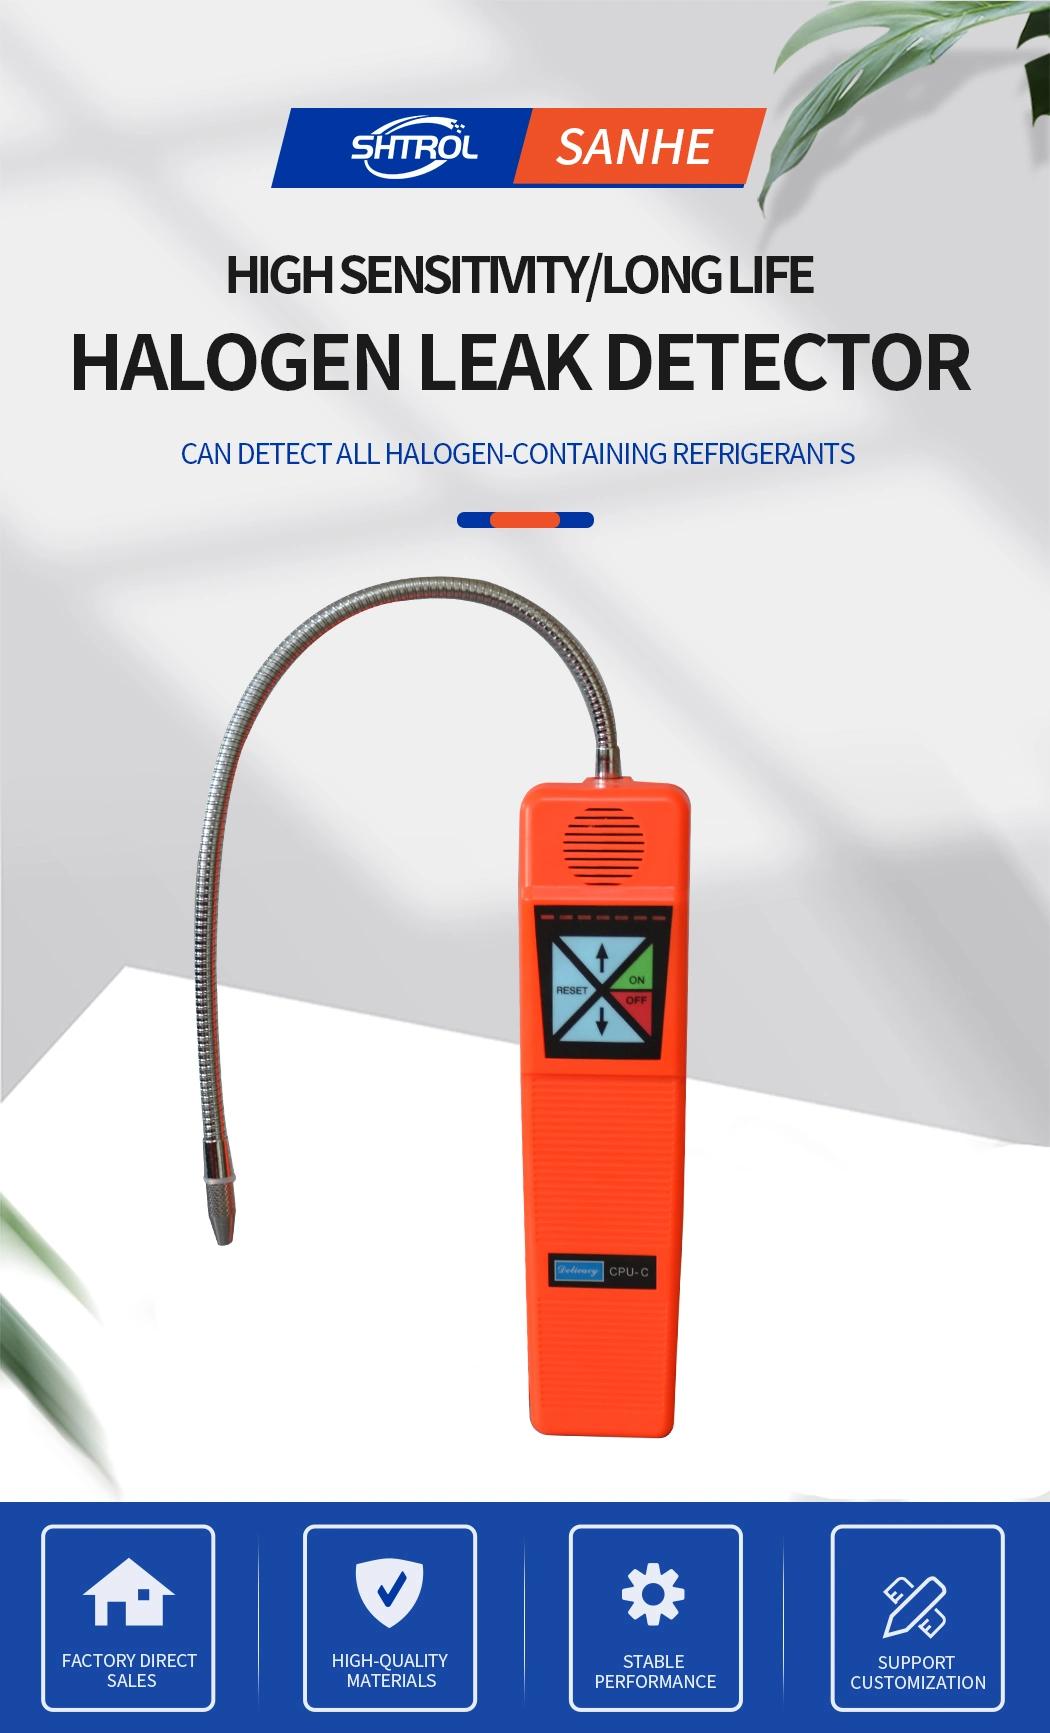 Halogen Leak Detector CPU-C Air Conditioning Halogen Leak Detector Air Conditioning Leak Detection Refrigerant Car Leak Detector